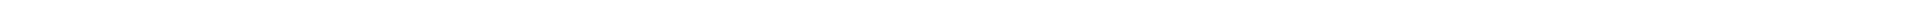 Лечение зубов - цены Алматы, Астана (Нур-Султан), Атырау, Усть-Каменогорск, Уральск, Кокшетау в Казахстане, фото 6